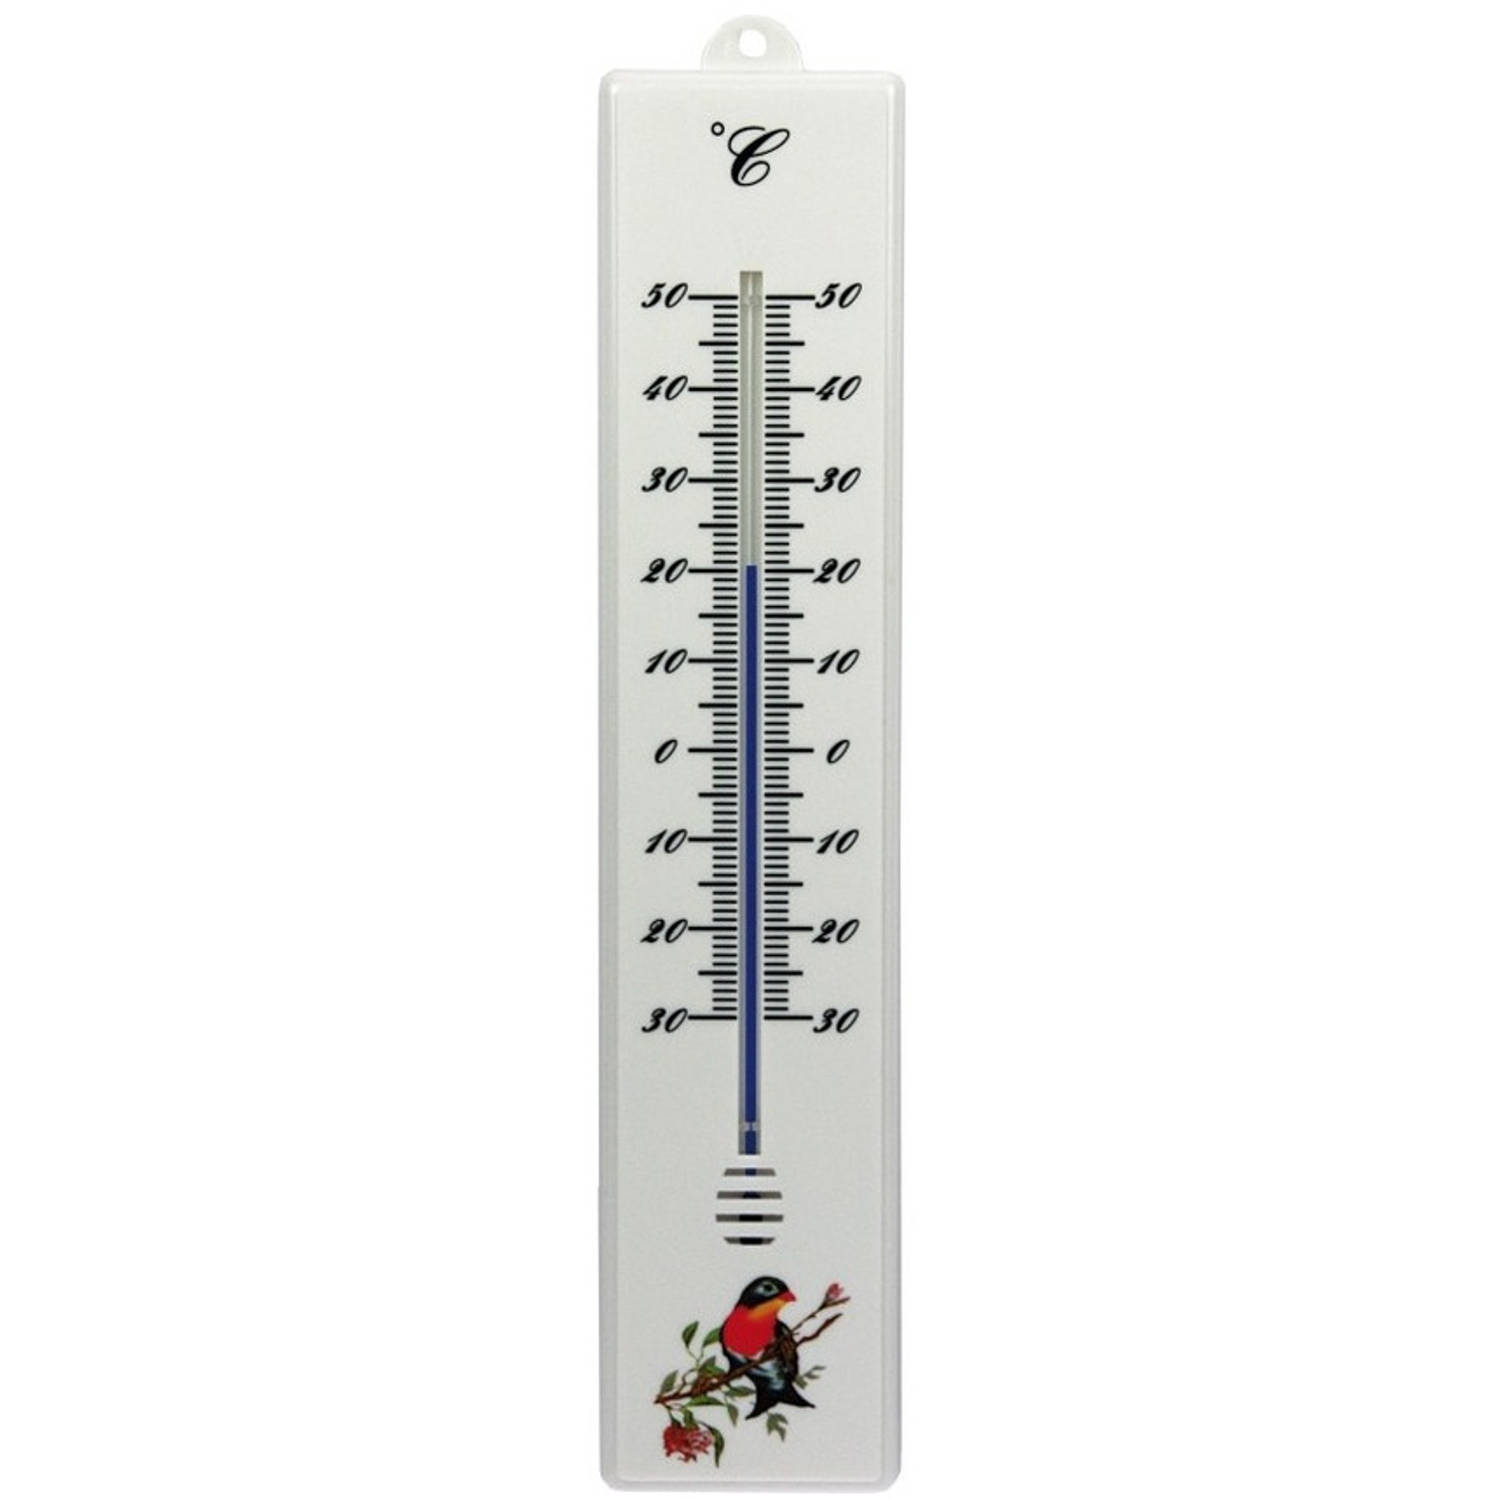 afgewerkt Plicht Edelsteen Thermometer buiten wit 32 cm - Buitenthermometers | Blokker